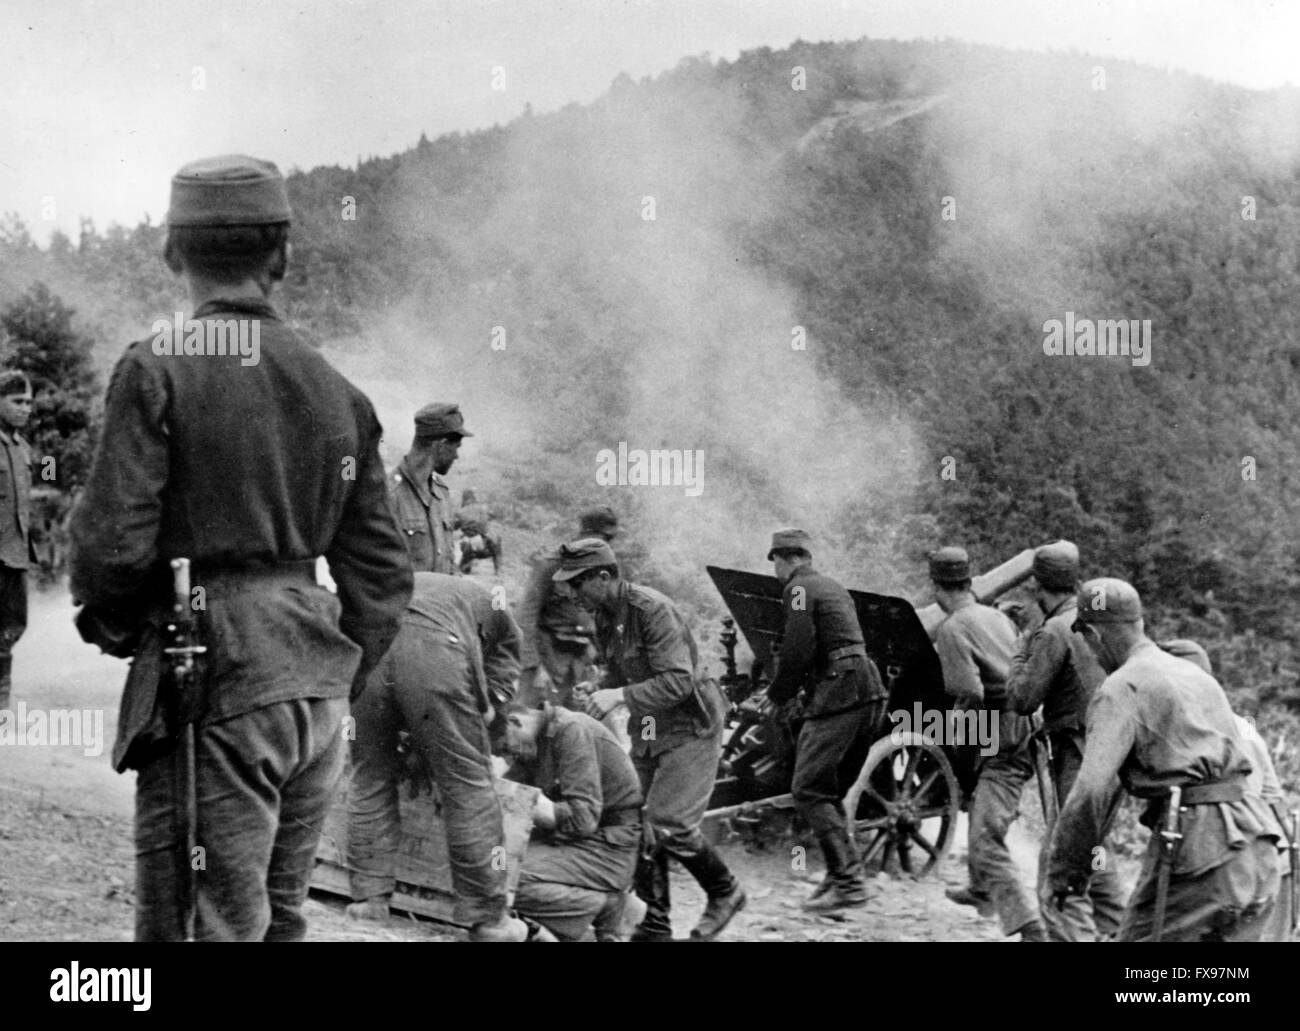 Le tableau de la propagande nazie montre des membres de la division de montagne Waffen de 13th de la SS Handschar tirant un fusil pendant le combat partisan en Yougoslavie. La photo a été publiée en 1943. Fotoarchiv für Zeitgeschichtee - PAS DE SERVICE DE VIREMENT - Banque D'Images